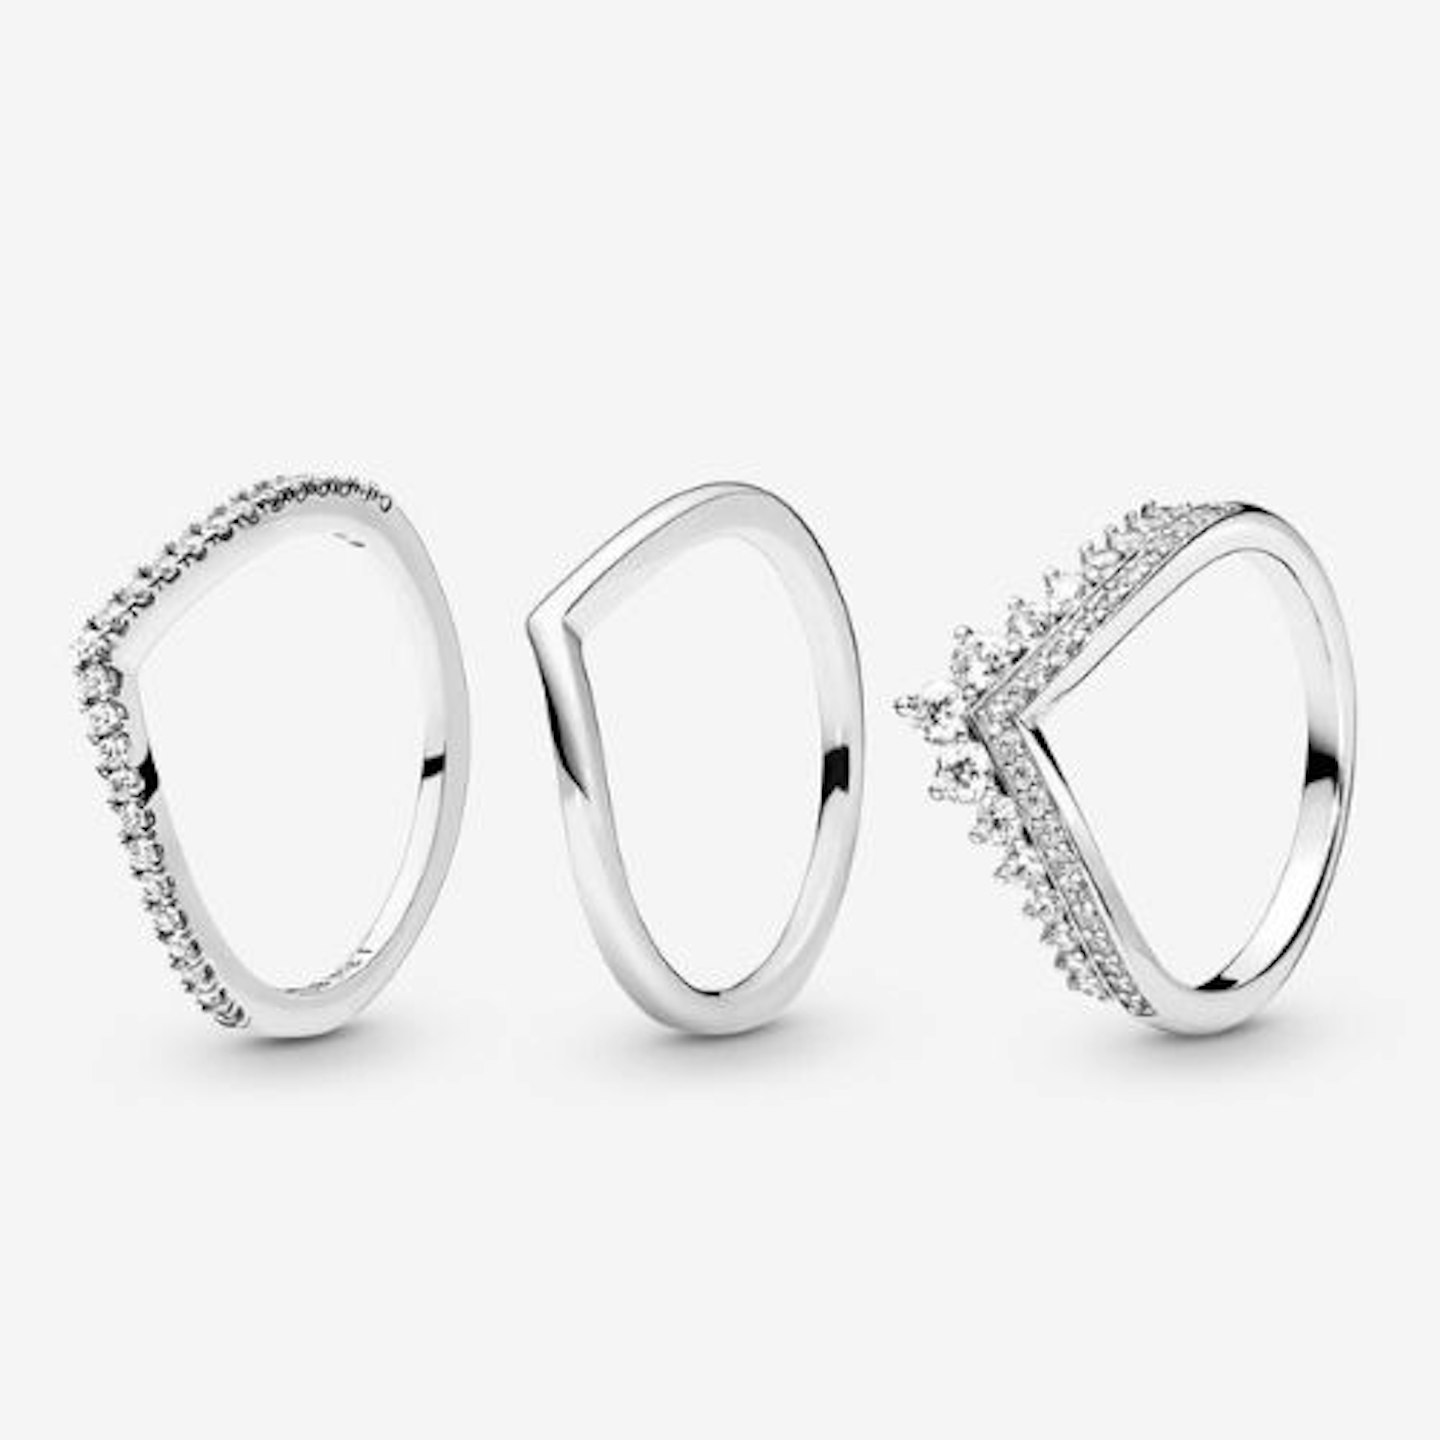 Wishbone Stacking Ring Gift Set